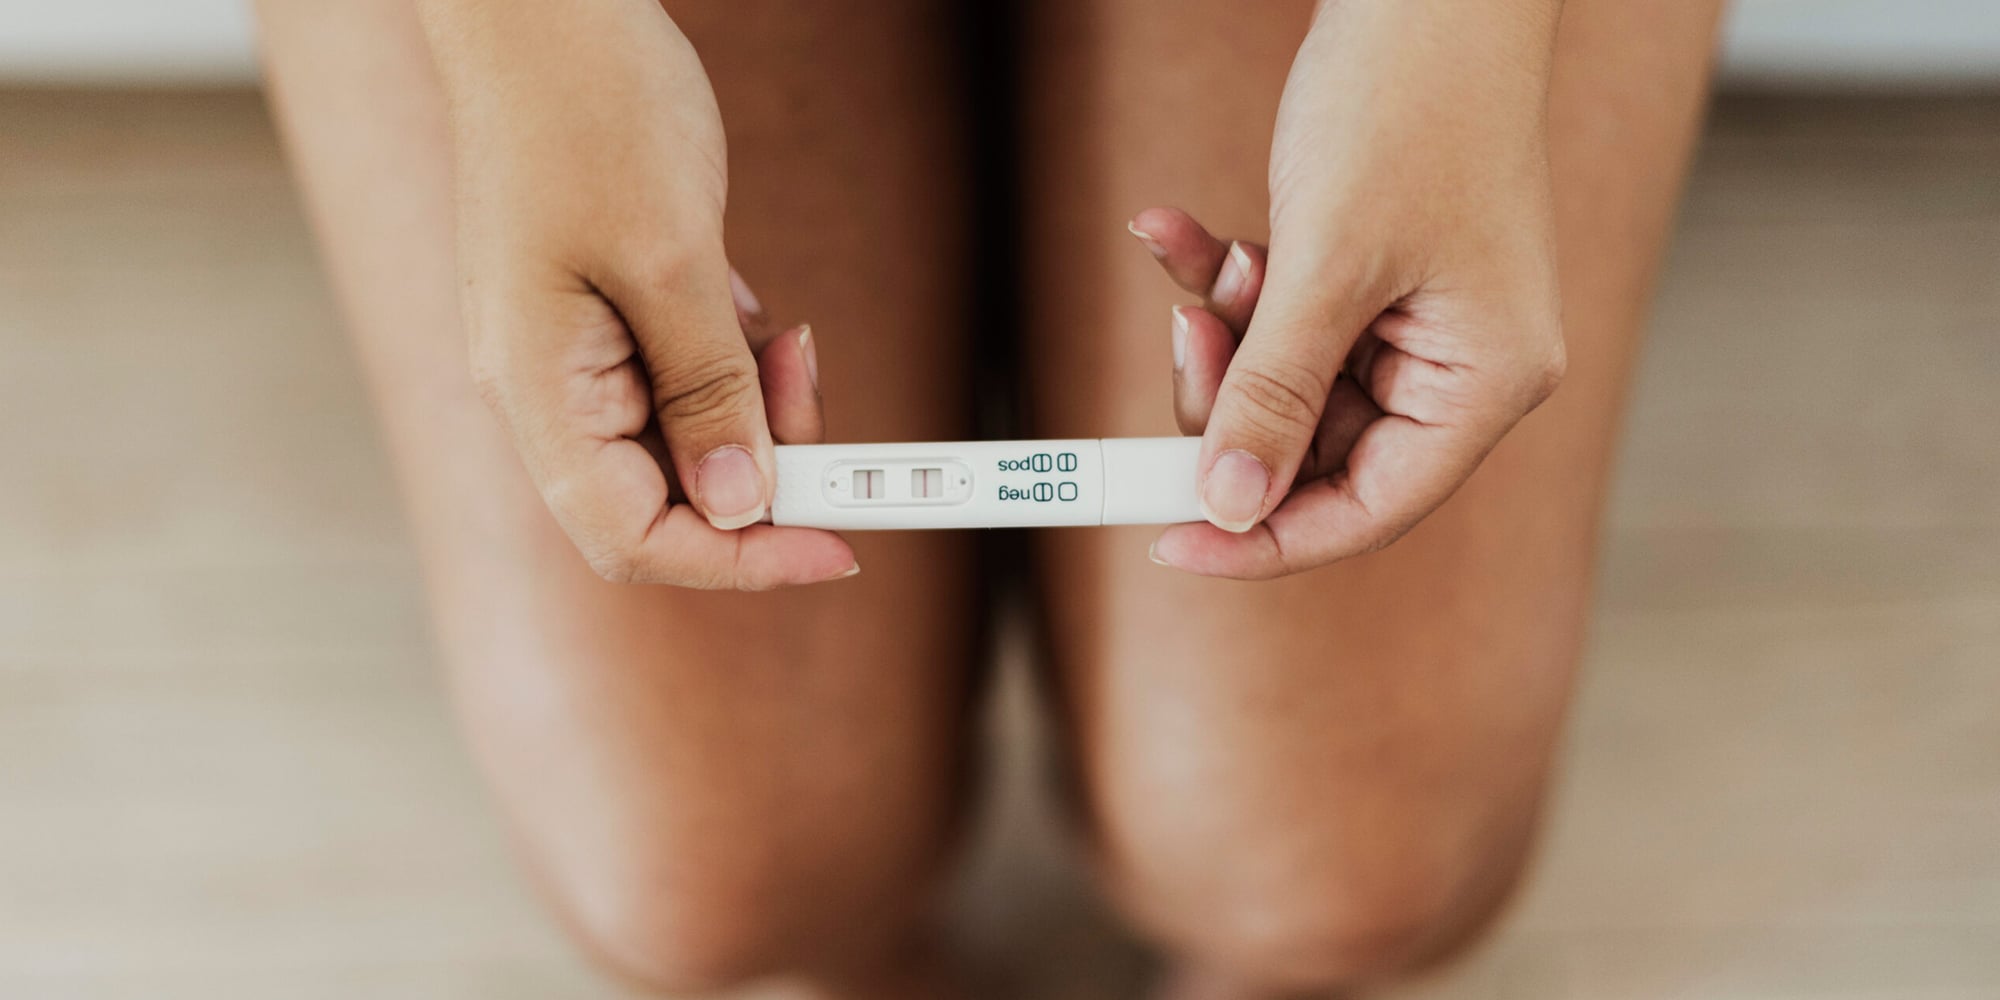 15 sintomas que podem indicar uma gravidez